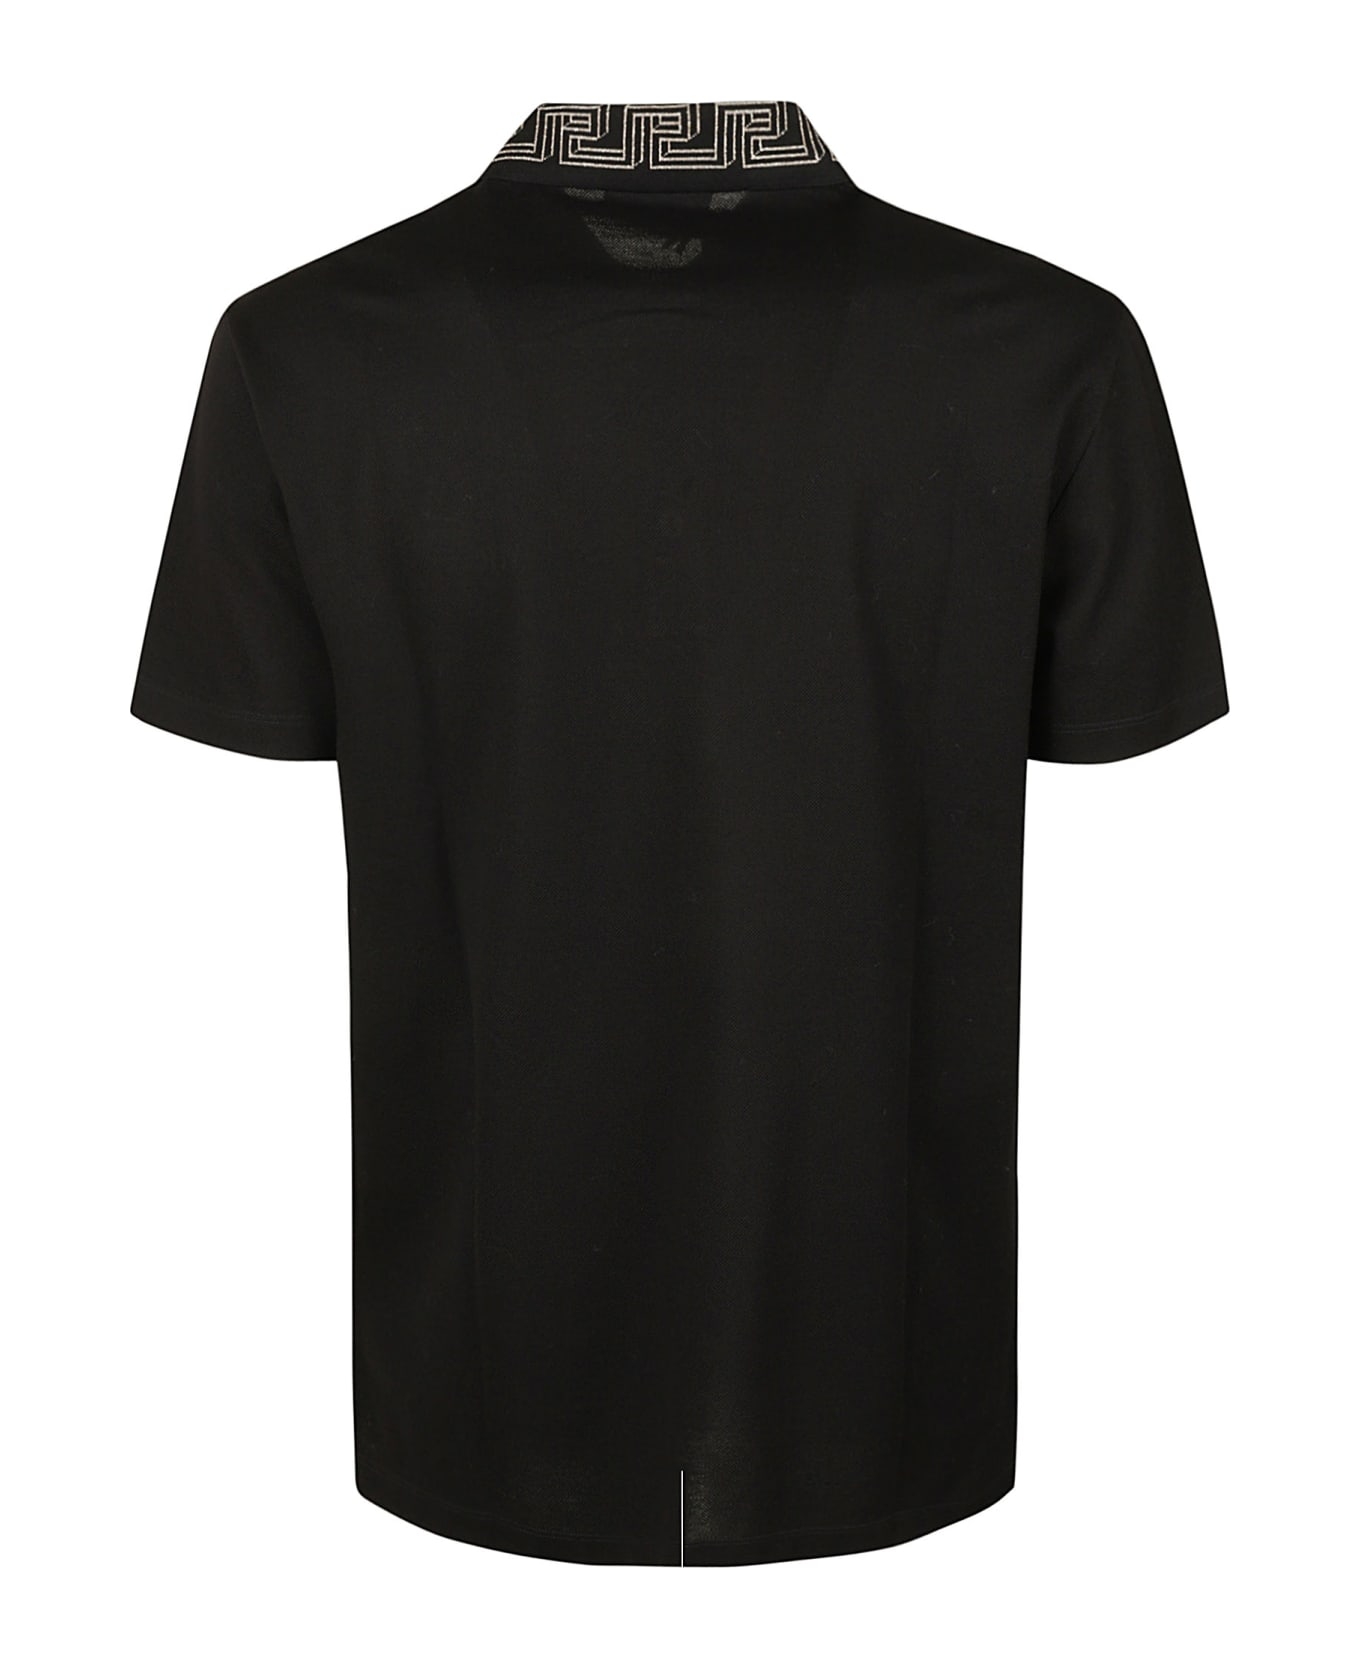 Versace Embroidered Kaki Polo Shirt - Black